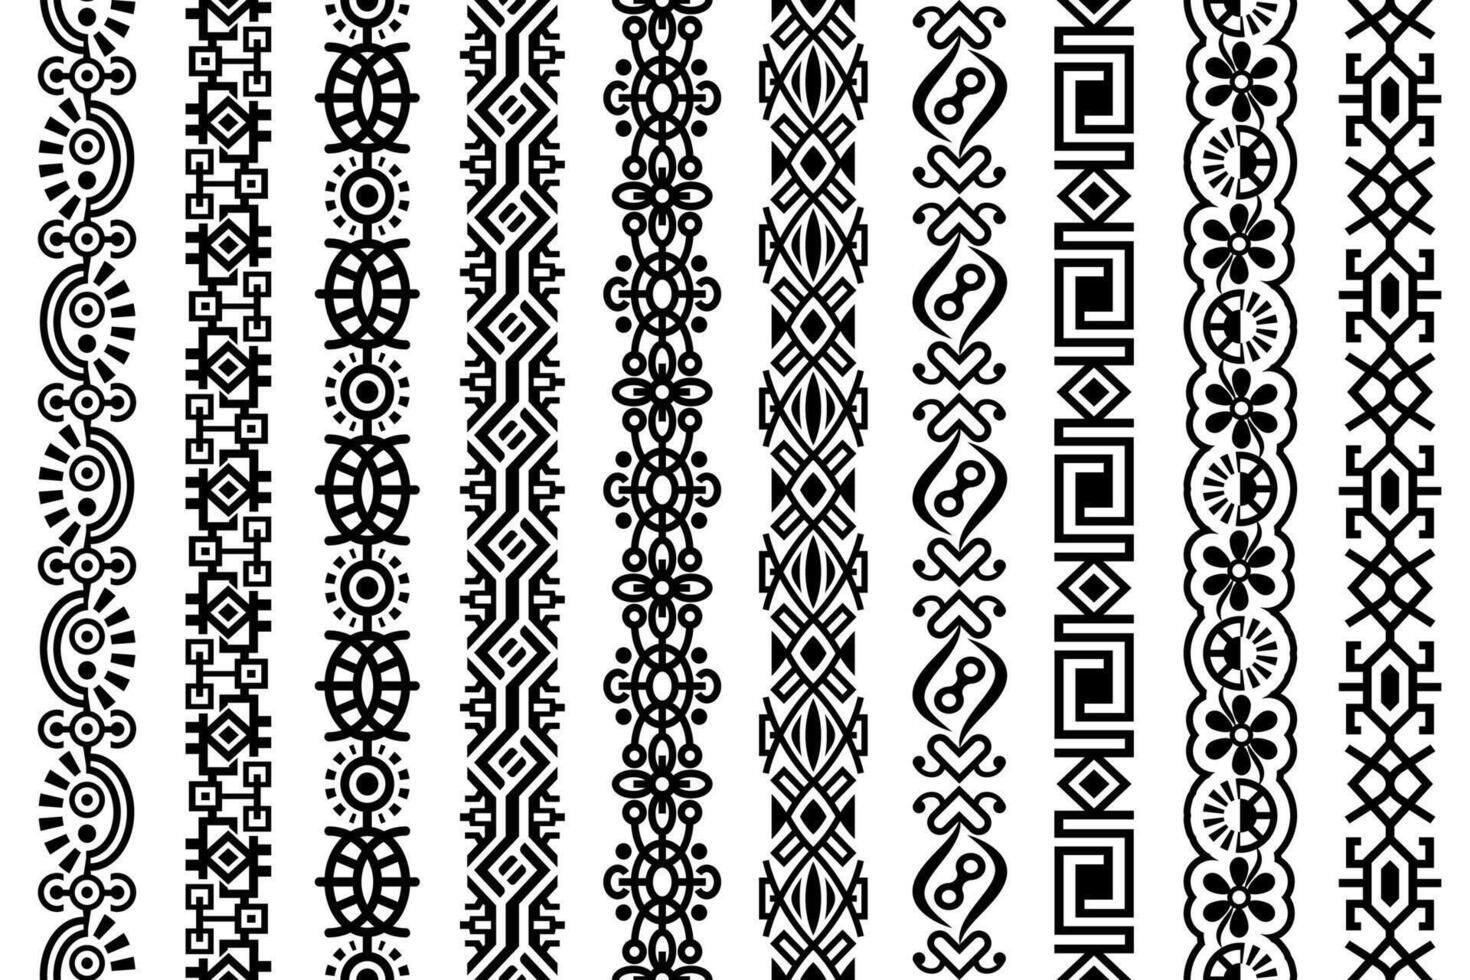 abstrakt nahtlos Universal- Vektor Vertikale Muster. abstrakt aufwendig geometrisch Grenzen, Rahmen, Spitze Muster mit angekettet geometrisch Design Elemente mit schwarz Farbe, isoliert auf Weiß Hintergrund.